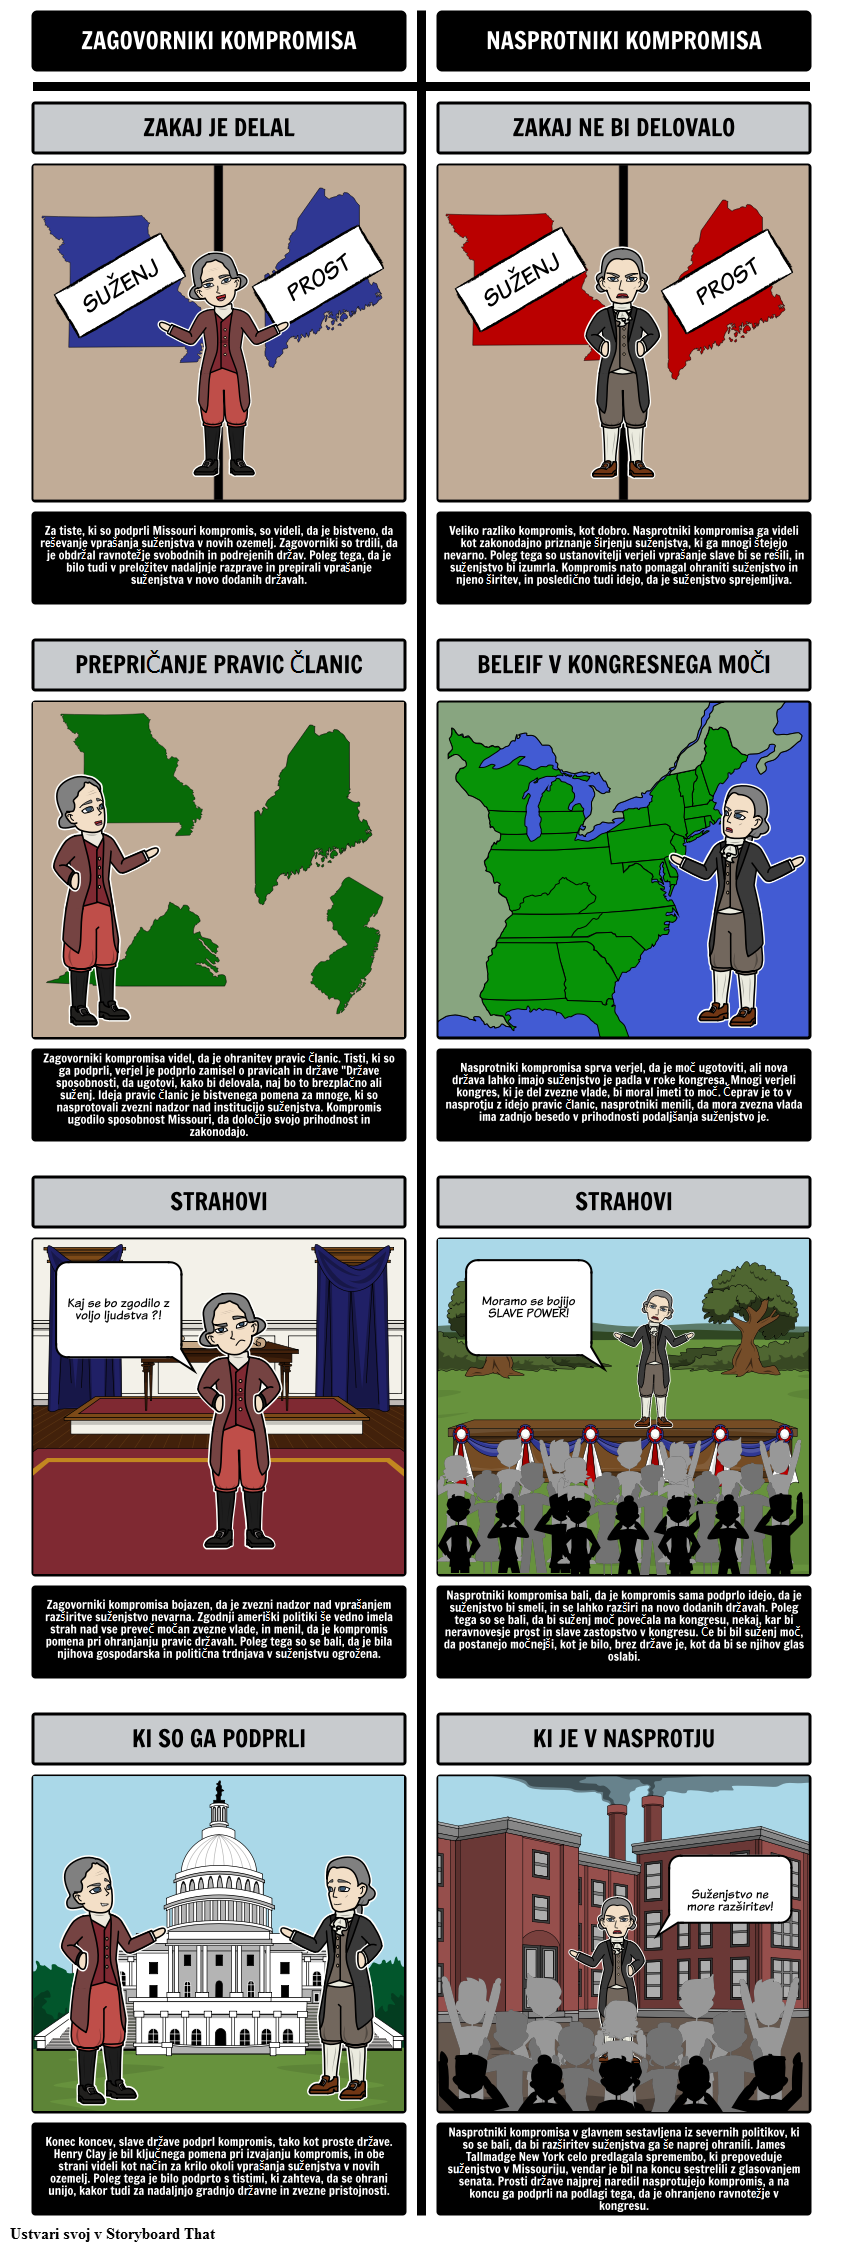 Missourijski sporazum iz 1820 - zagovornikov in nasprotnikov